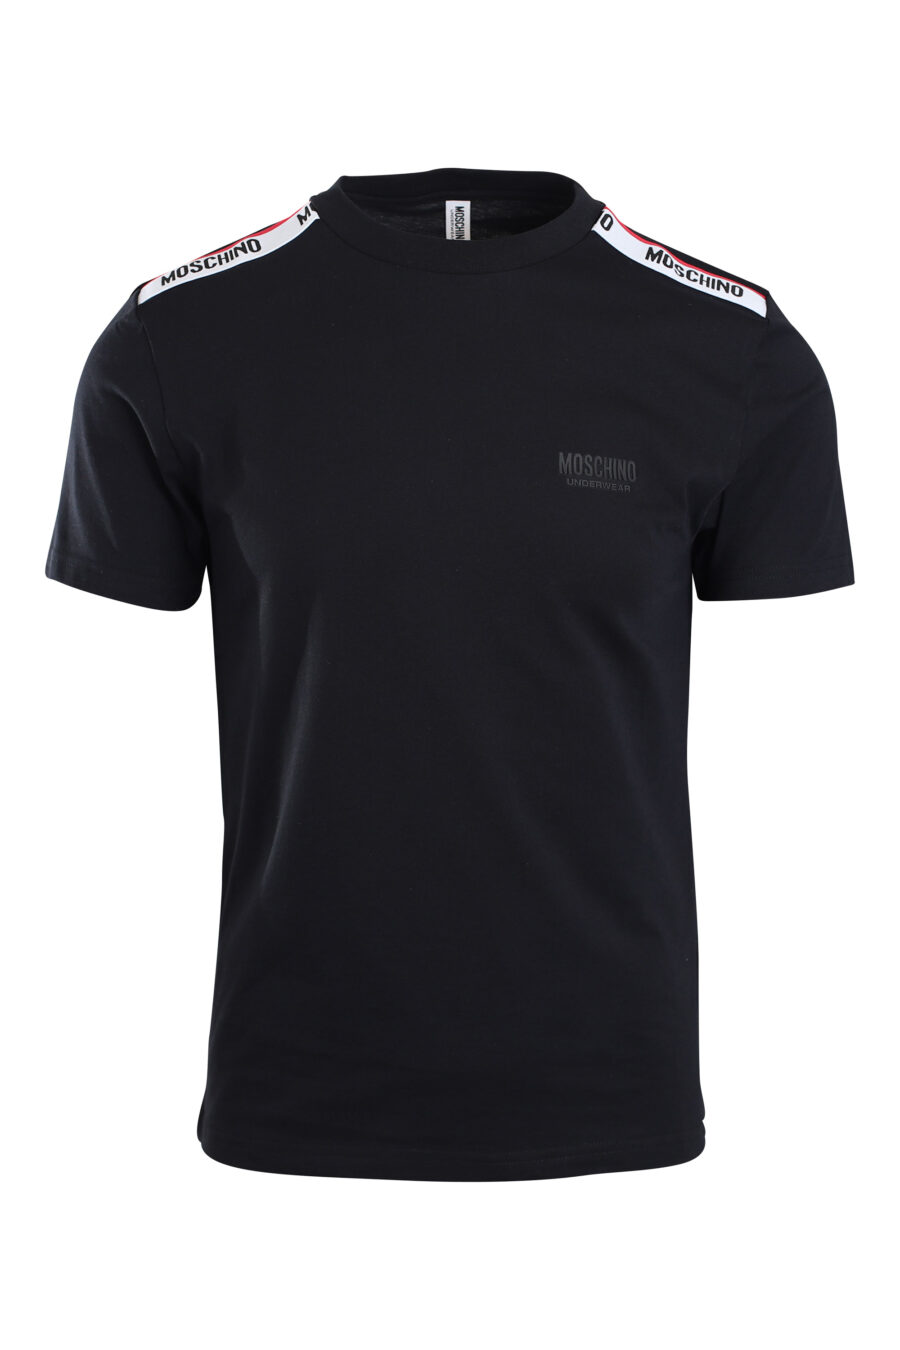 Camiseta negra con logo en banda en hombros - IMG 2160